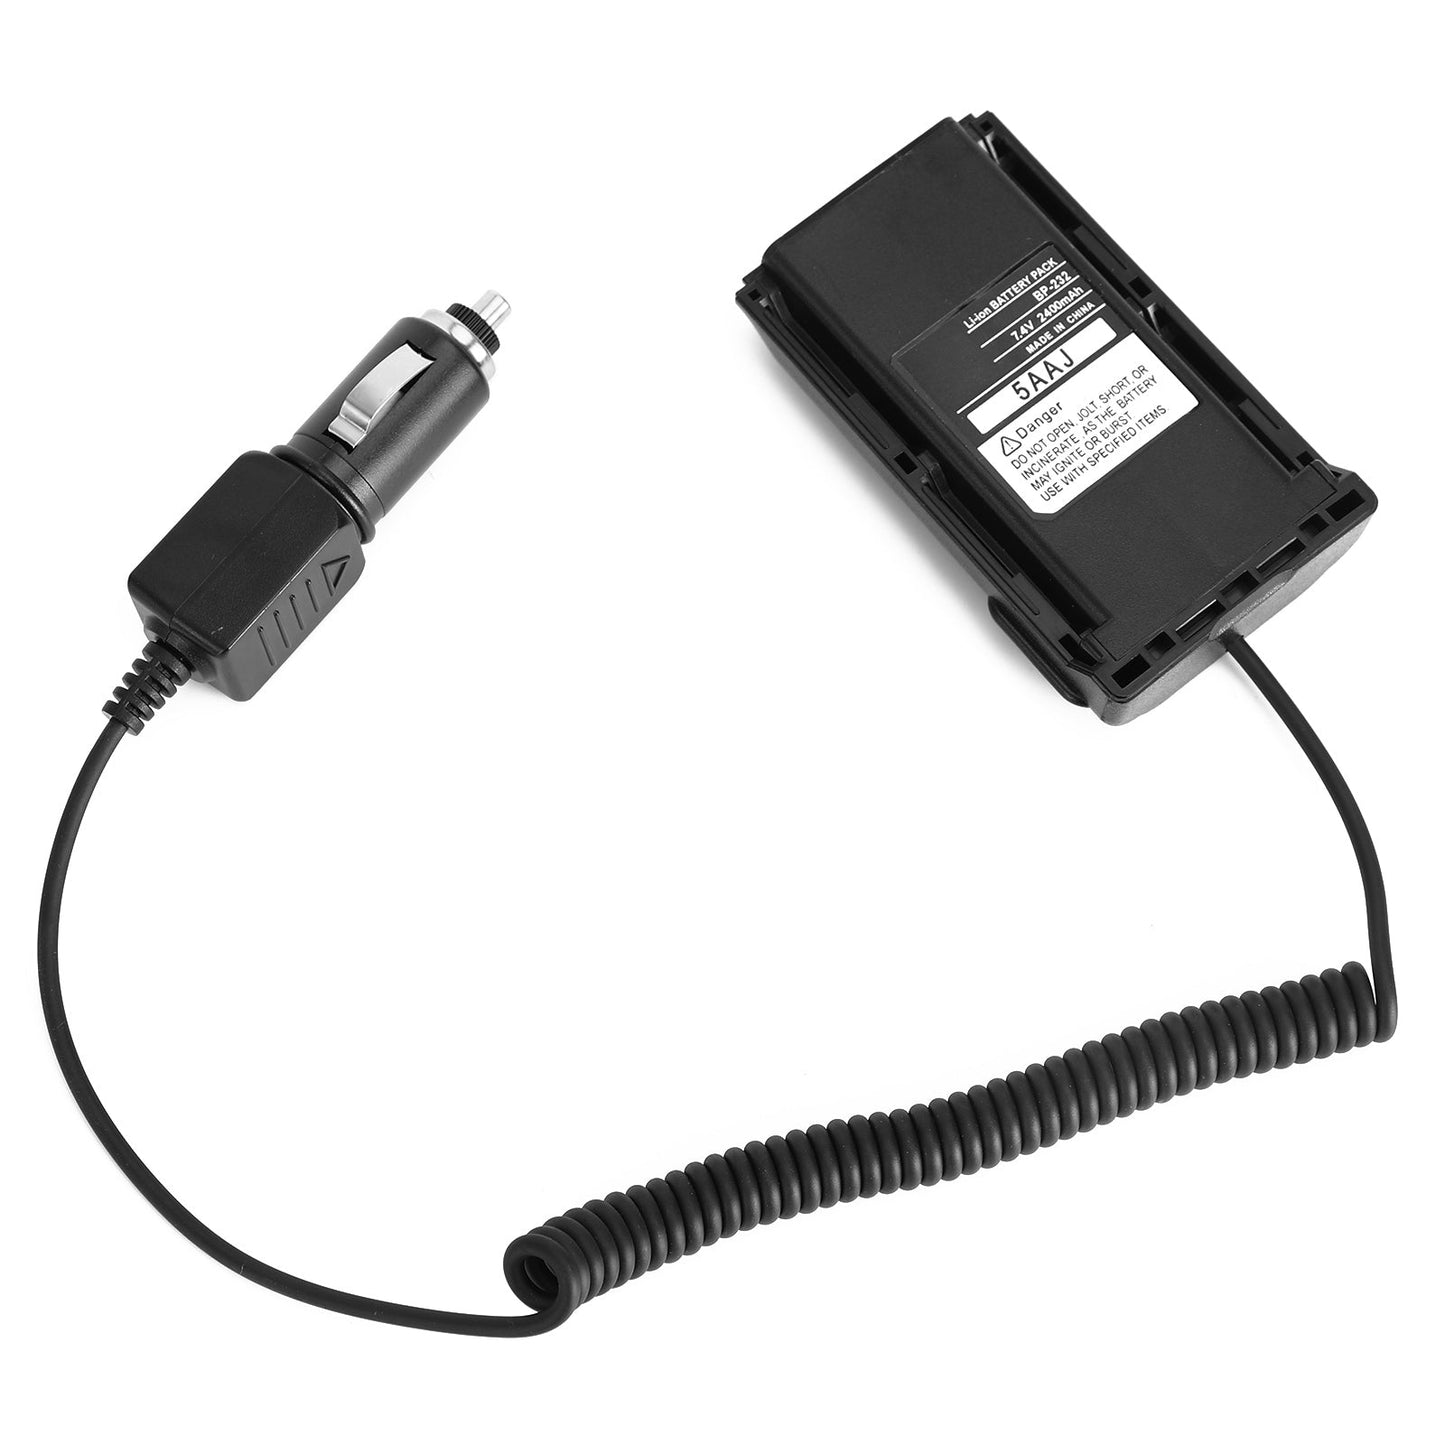 Chargeur de voiture Batterie BP232 Eliminator Adaptateur pour ICF4160 F4161 F4011 F43GT Radio